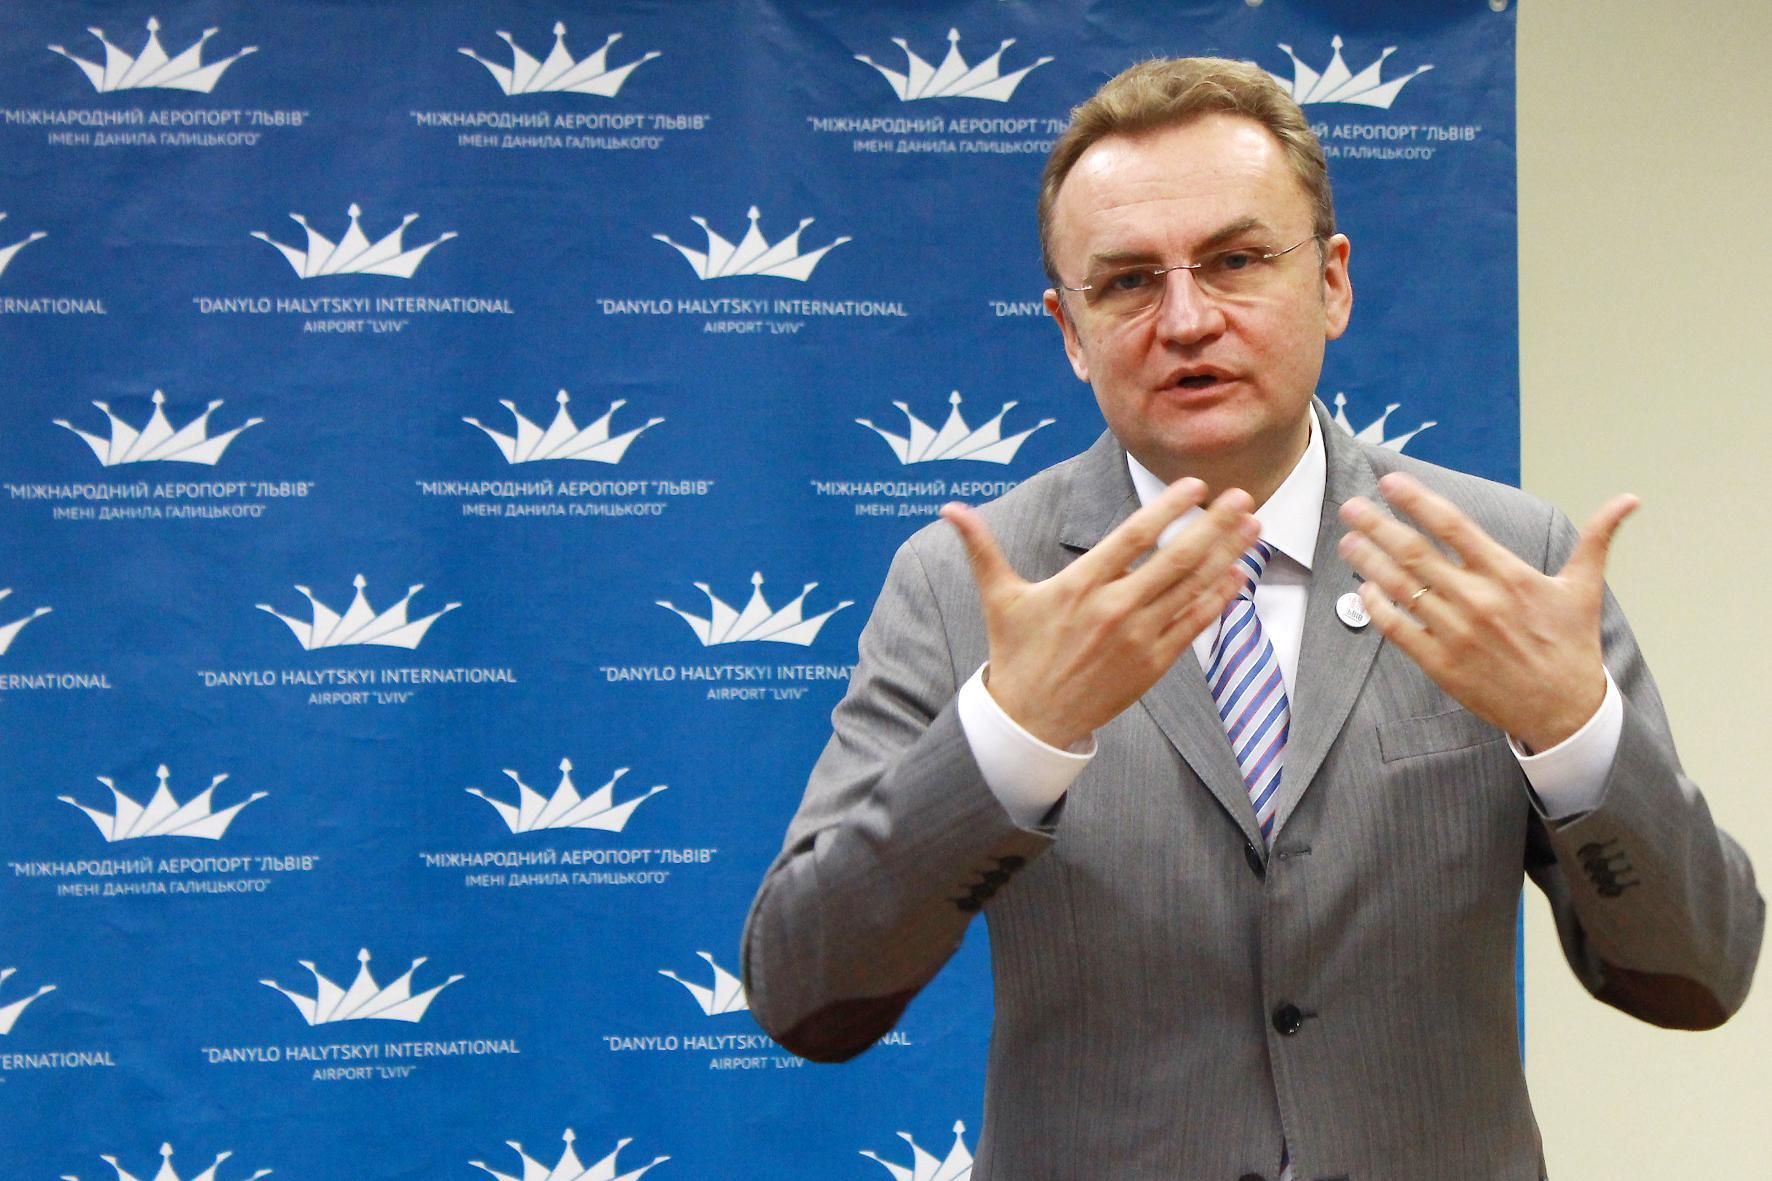 Садовый предложил ЕС выбрать кандидата на пост секретаря ЛГС среди своих депутатов